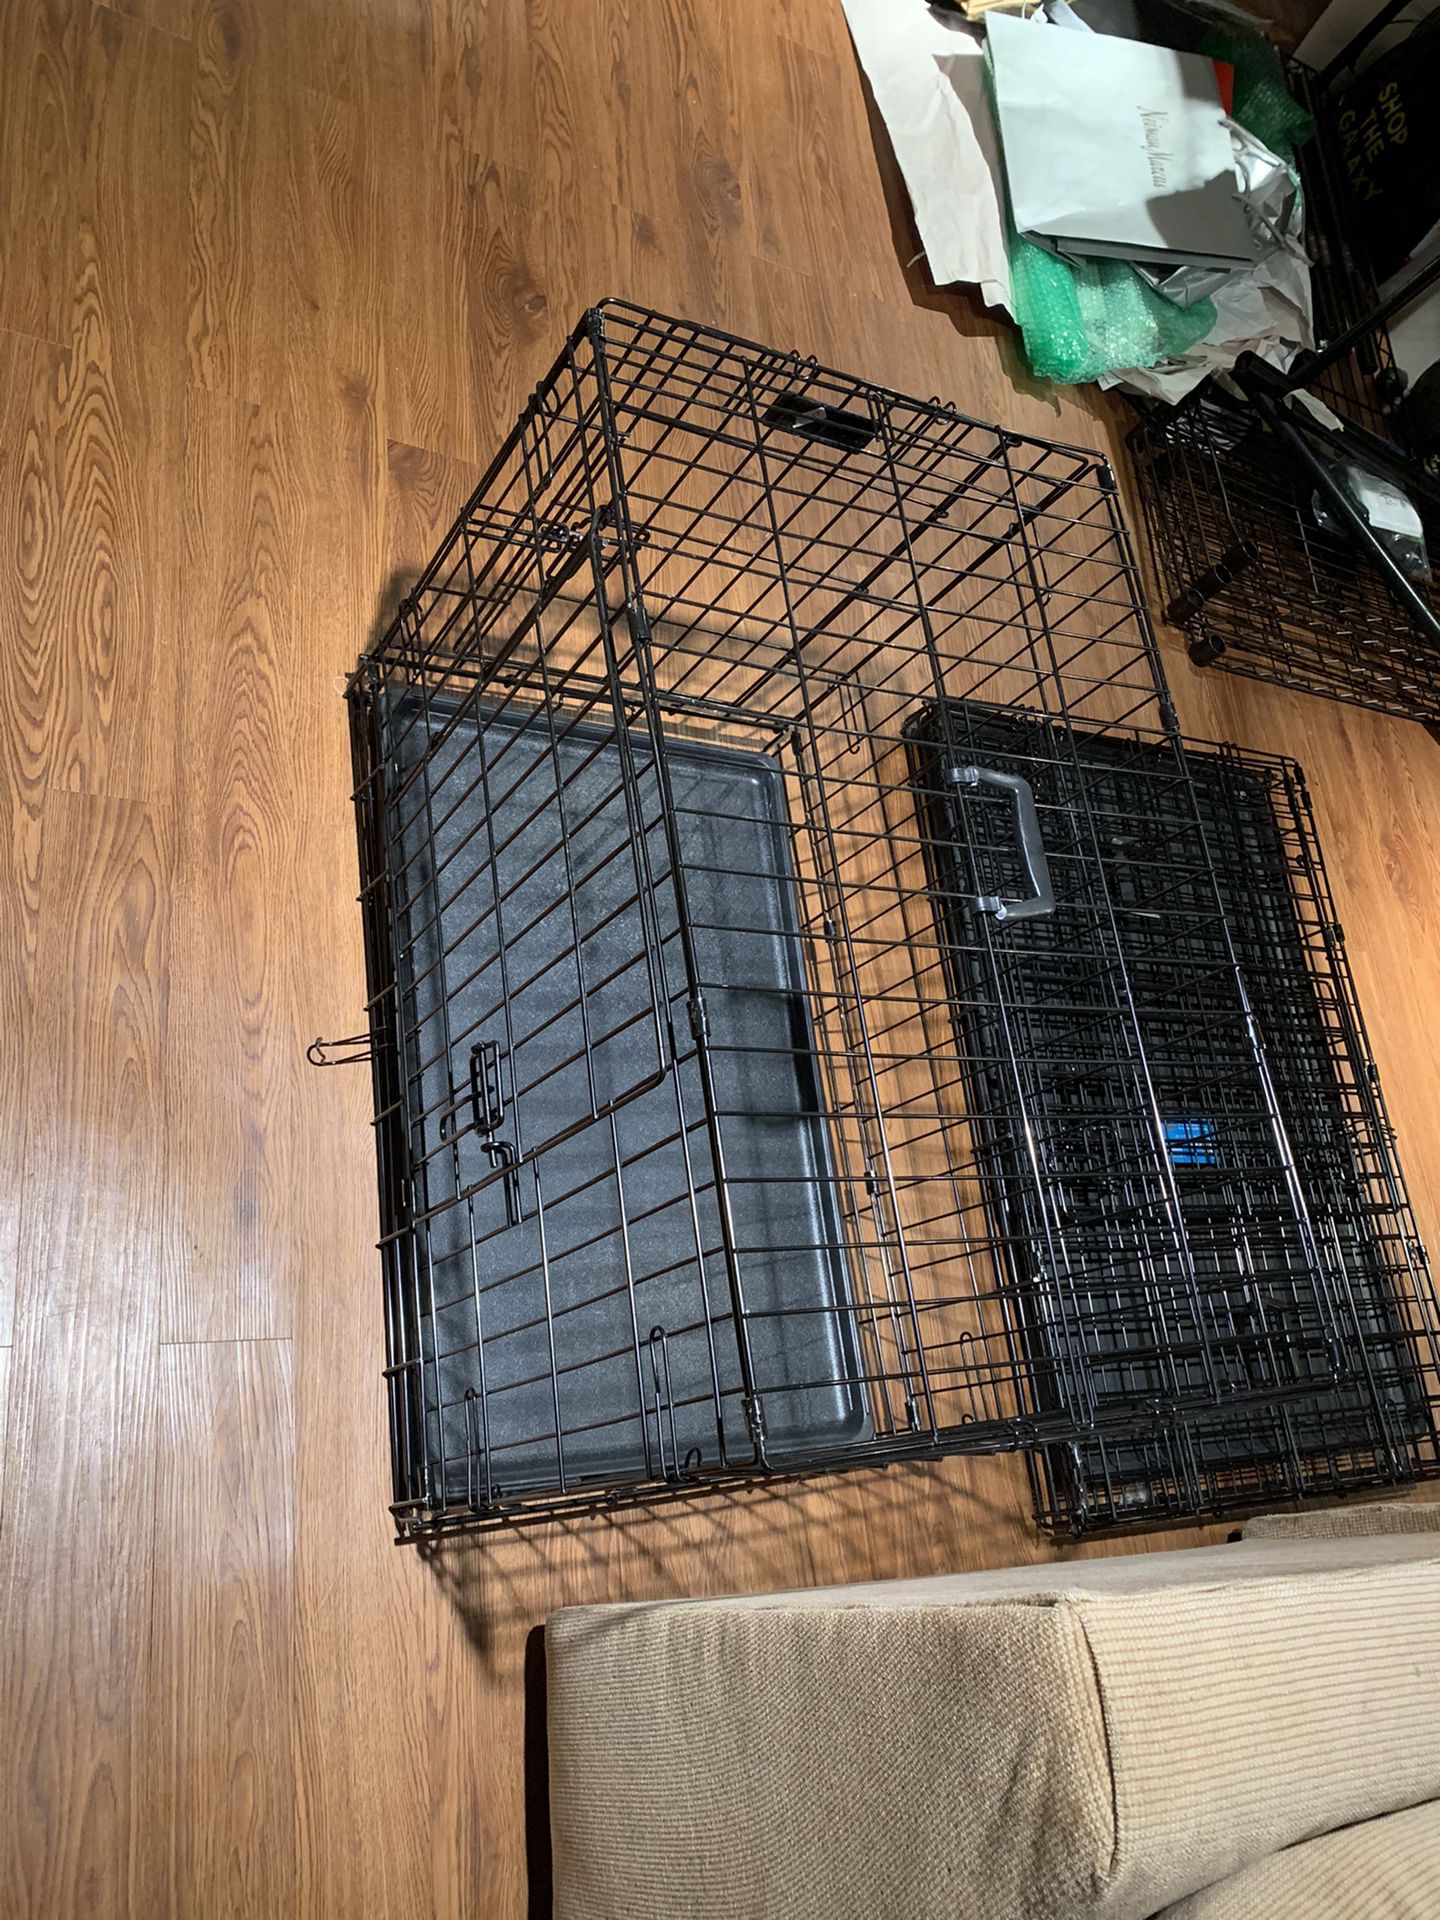 Medium size dual gate dog crate.